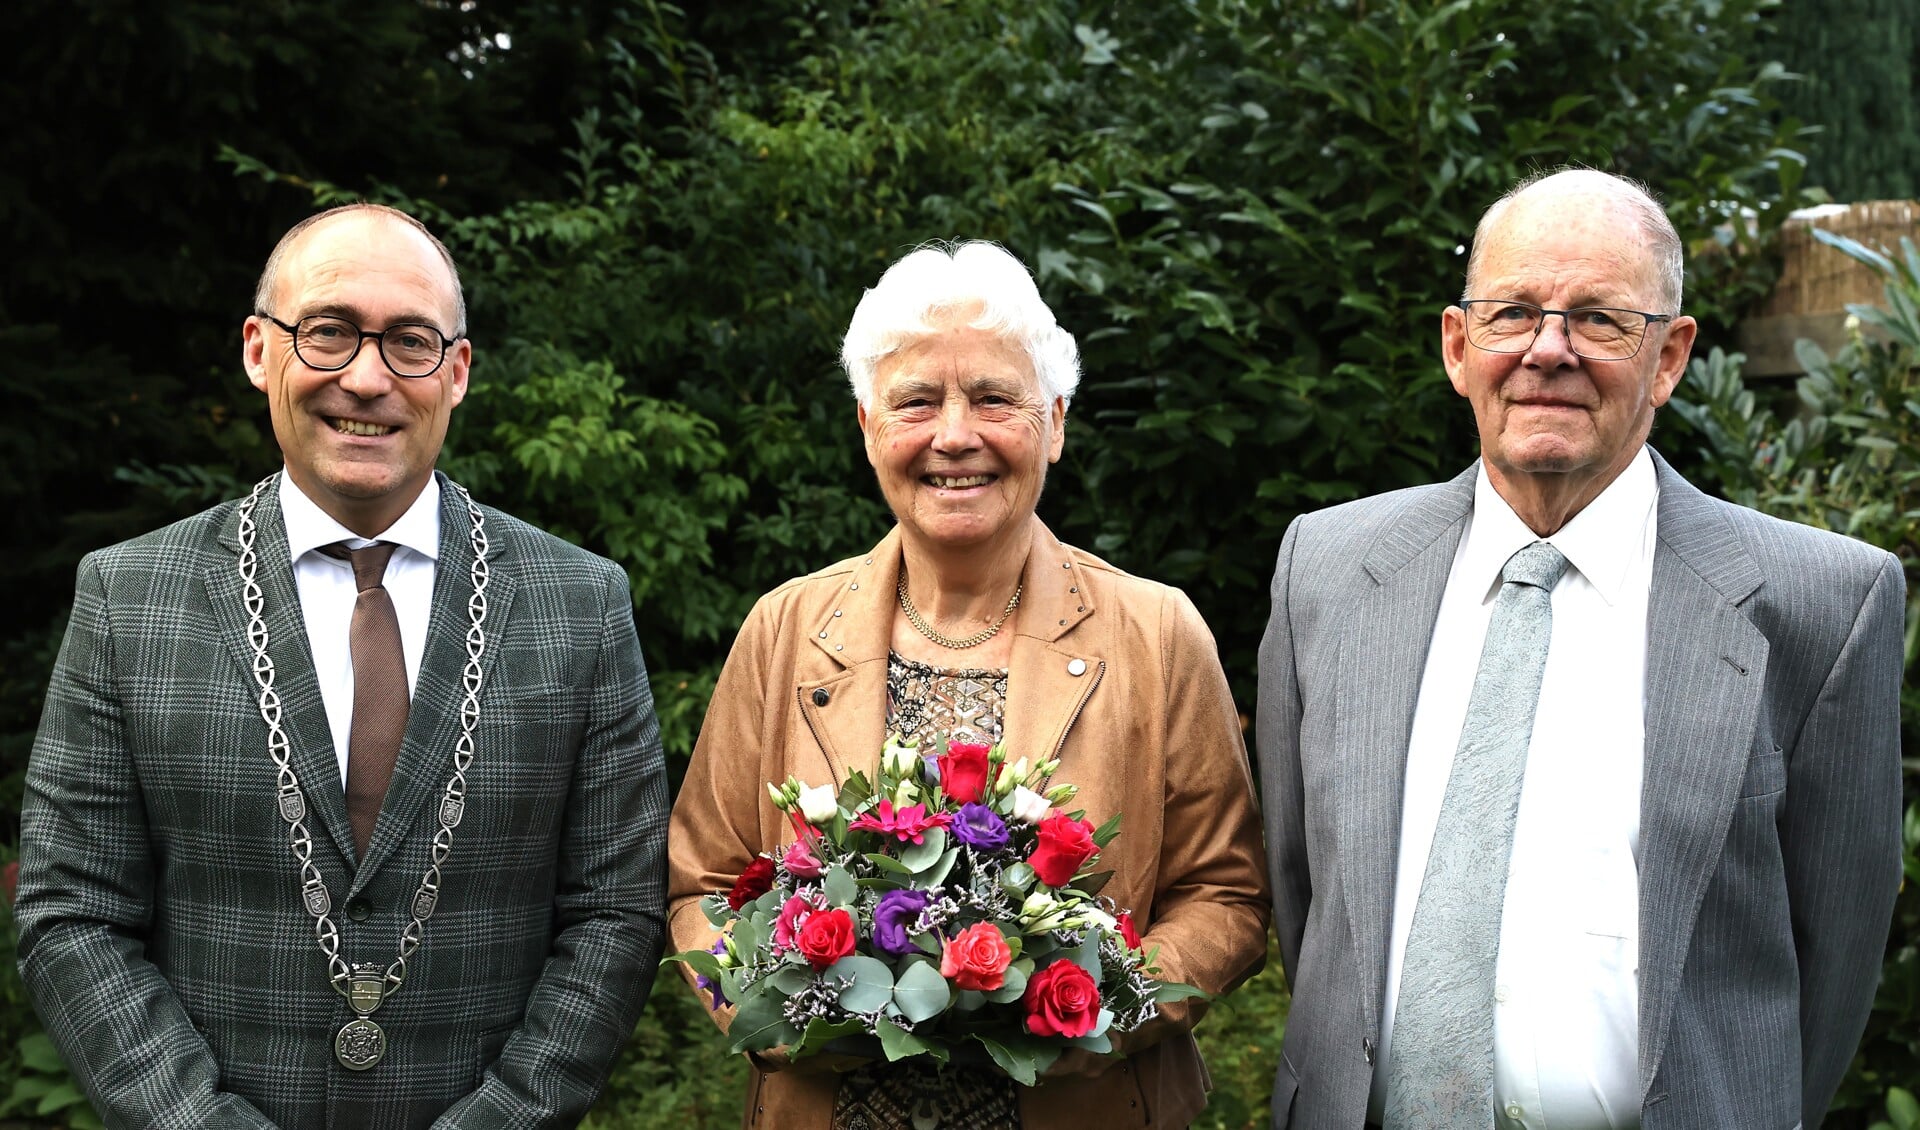 Het diamanten bruidspaar Van der Scheer werd gefeliciteerd door burgemeester Anno Wietze Hiemstra. 